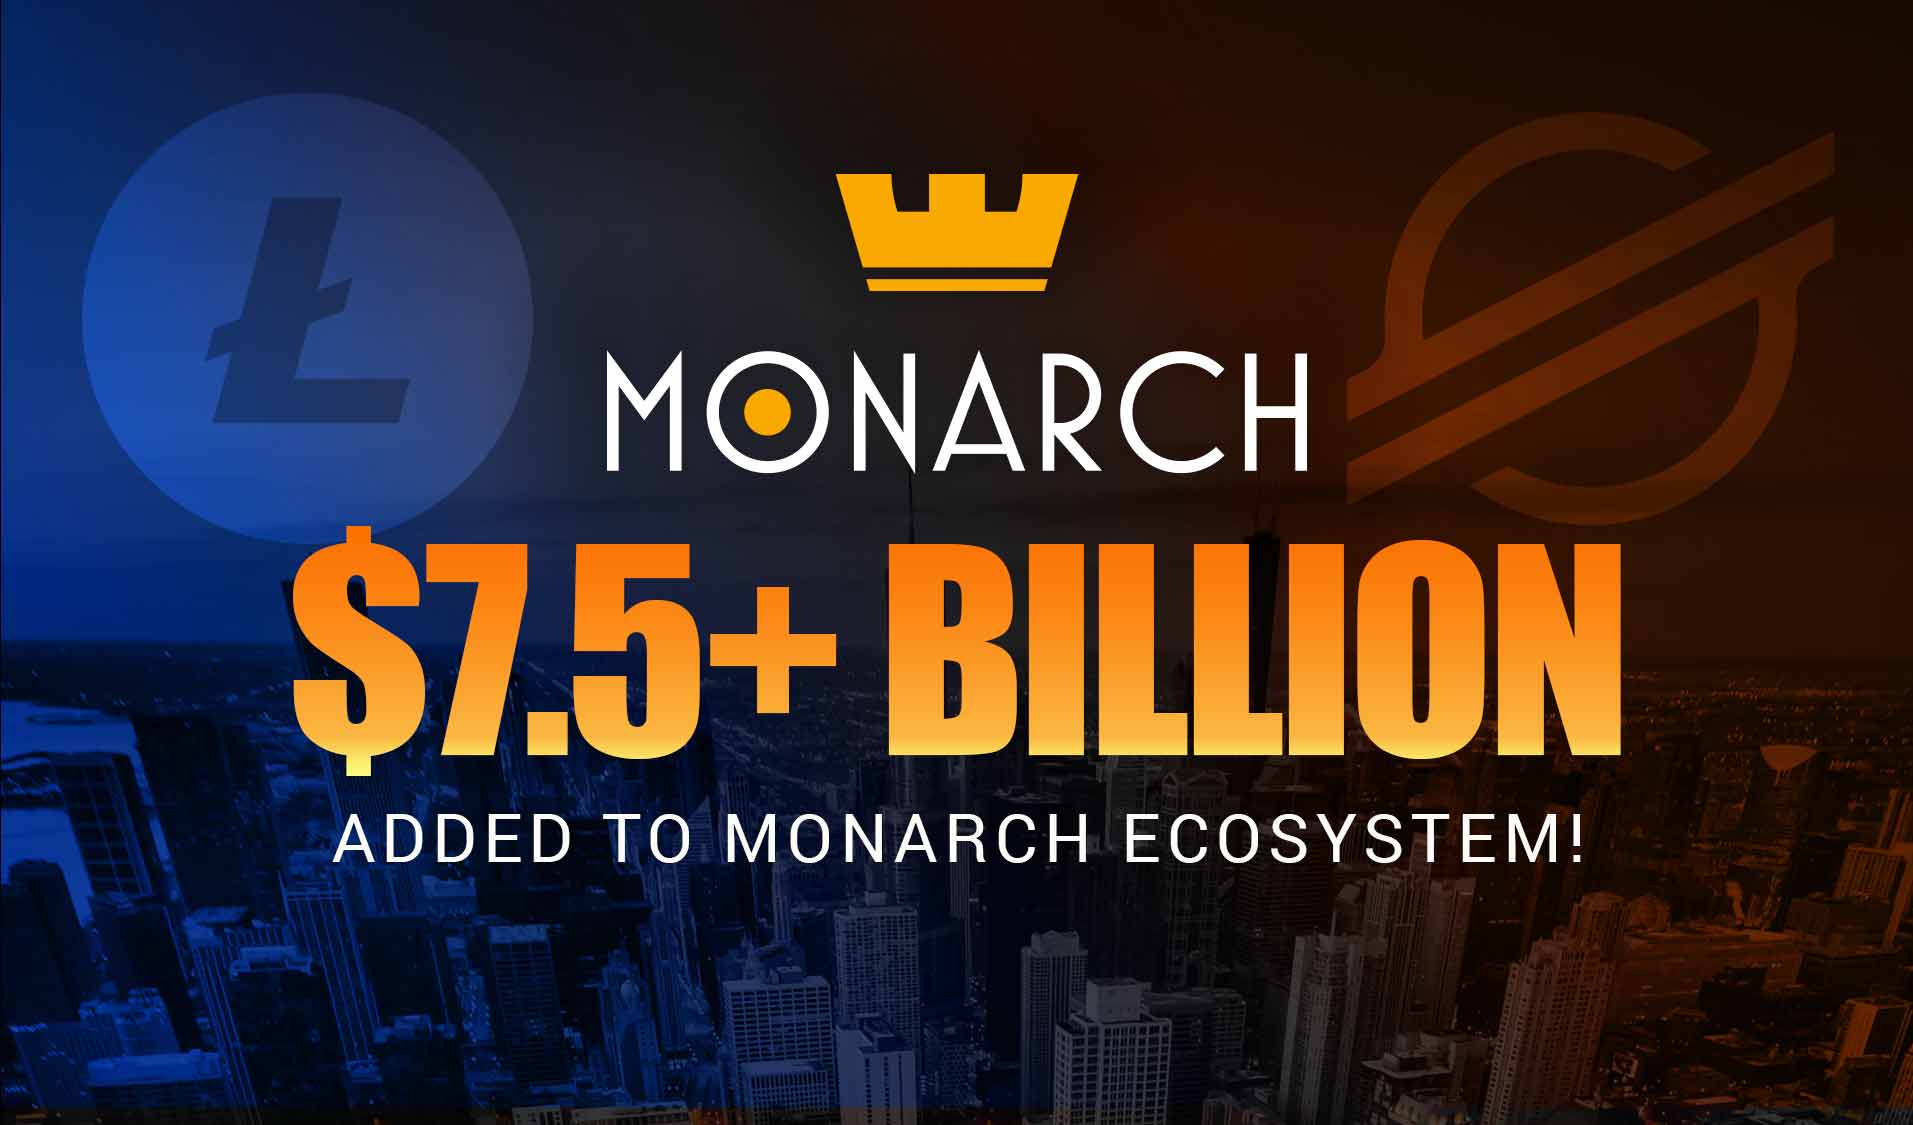 Litecoin & Stellar to Add $7.5+ Billion in Market Value to the Monarch Ecosystem